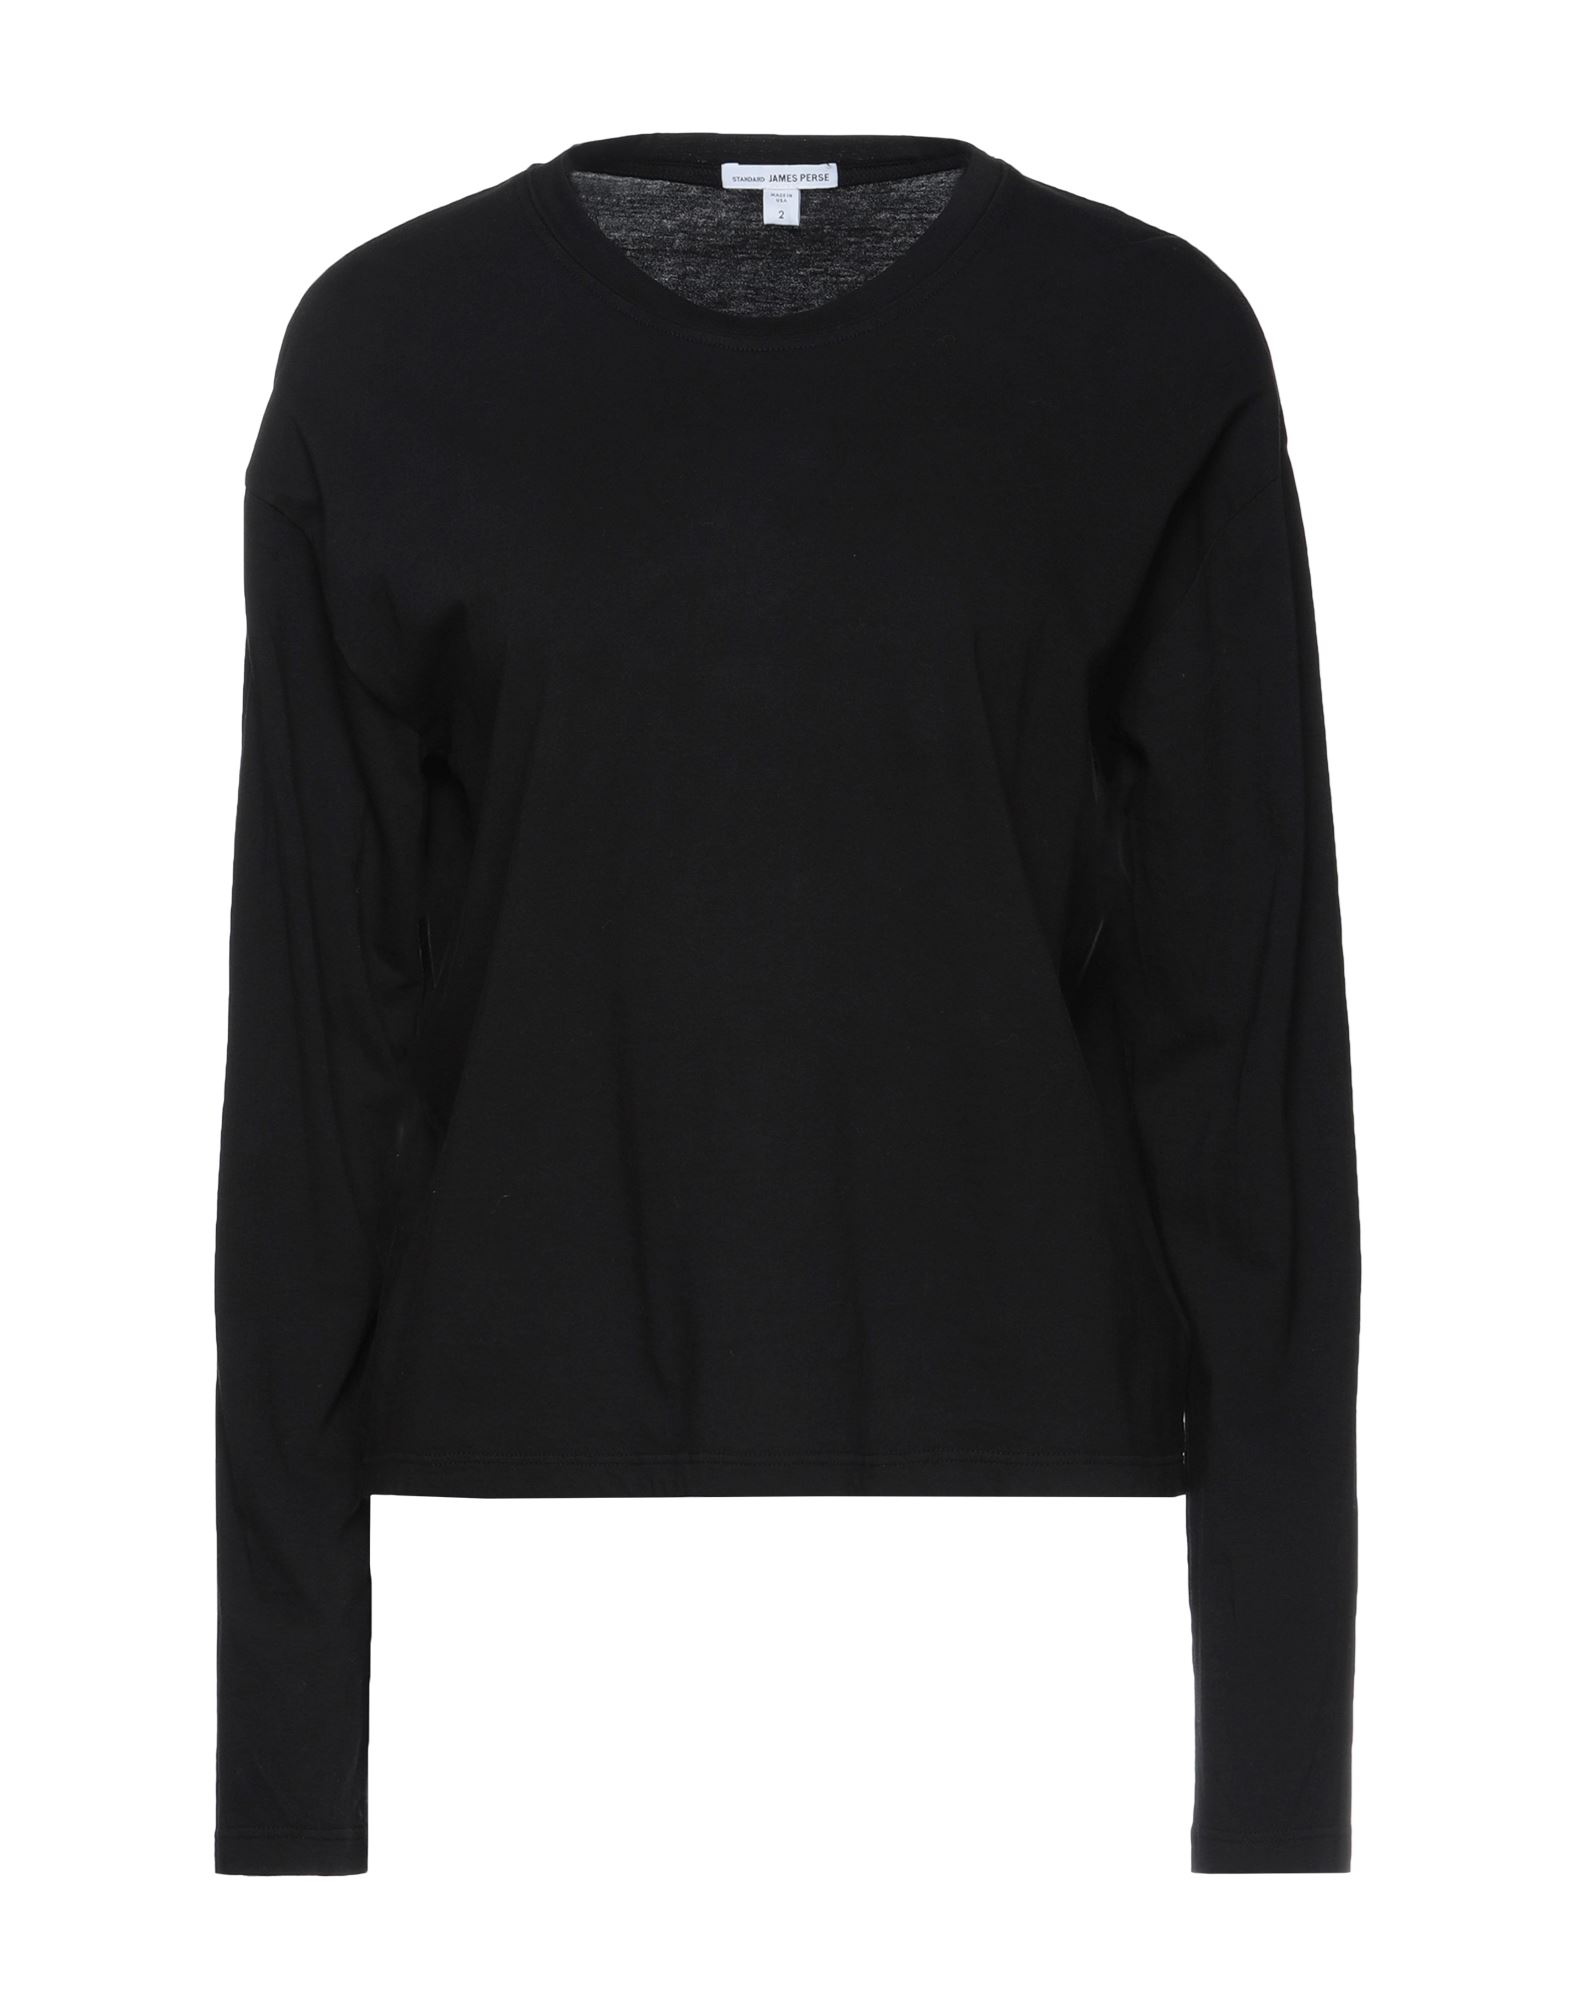 Shop James Perse Woman T-shirt Black Size 3 Cotton